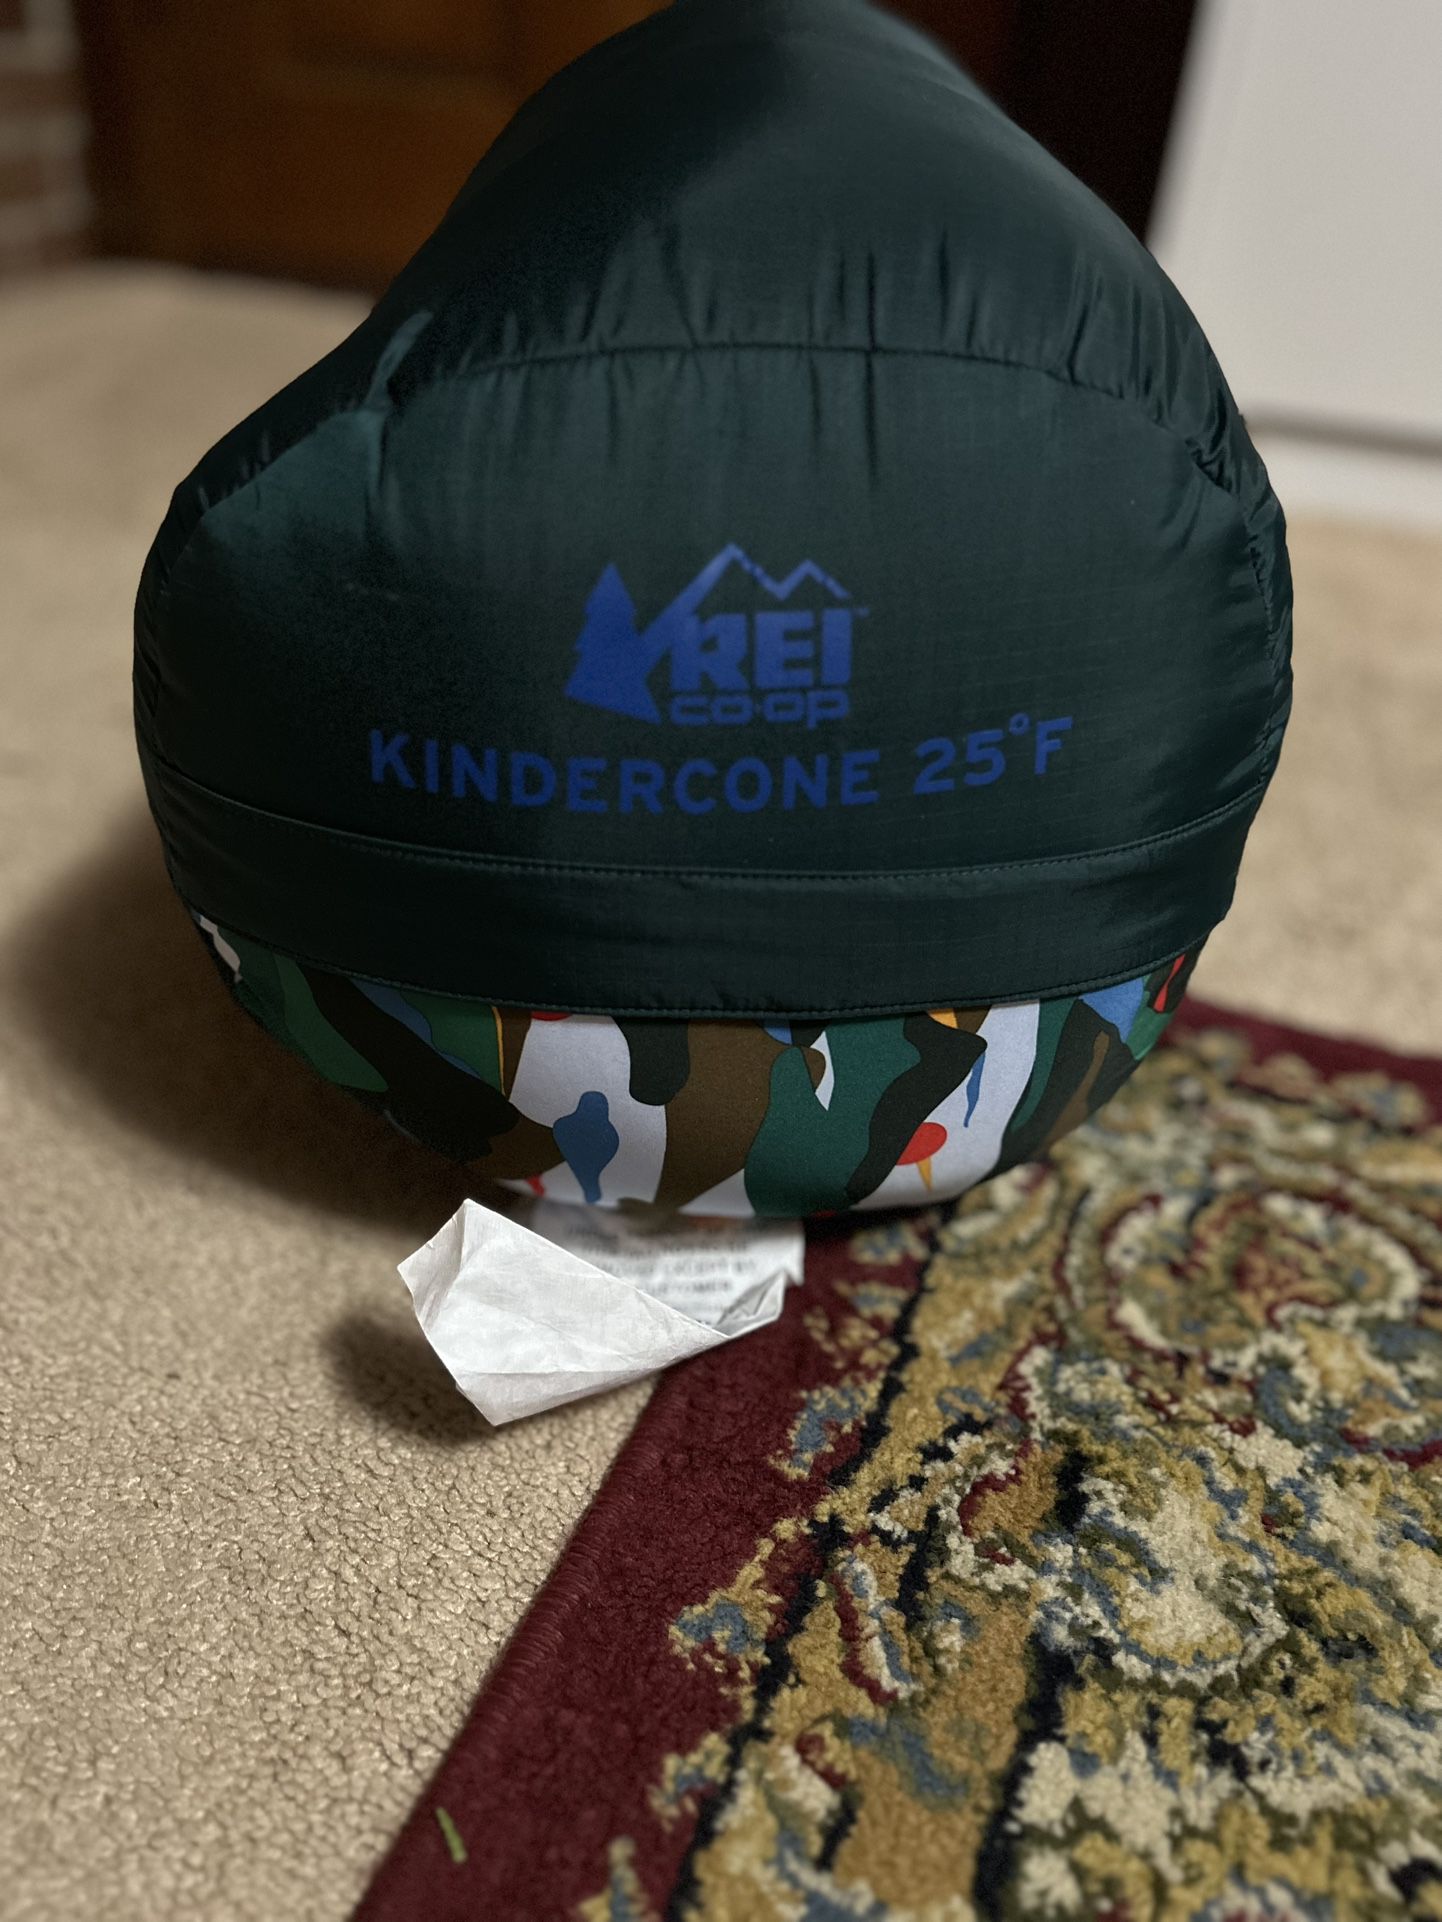 REI kindercone 25 Sleeping Bag 